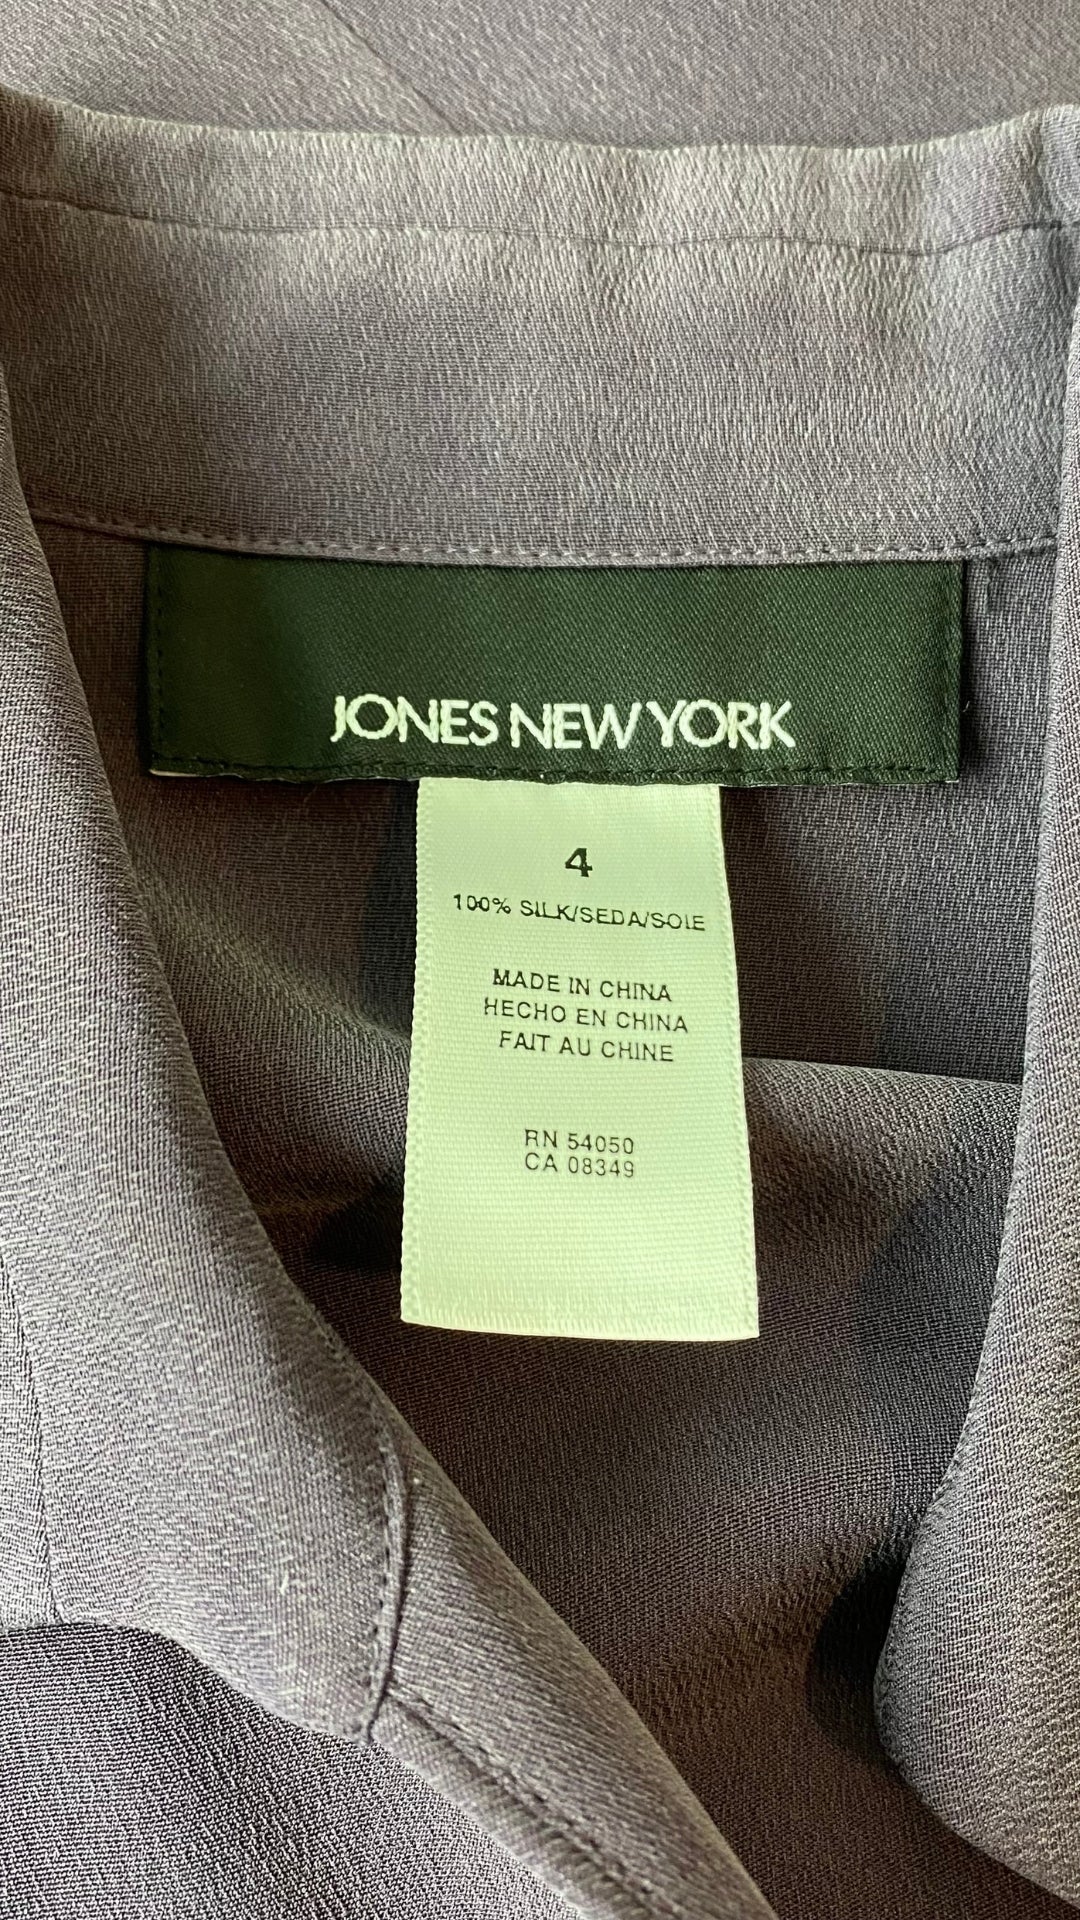 Chemisier en soie mauve sans manches Jones New York, taille 4 (xs/s). Vue de l'étiquette de marque et taille.